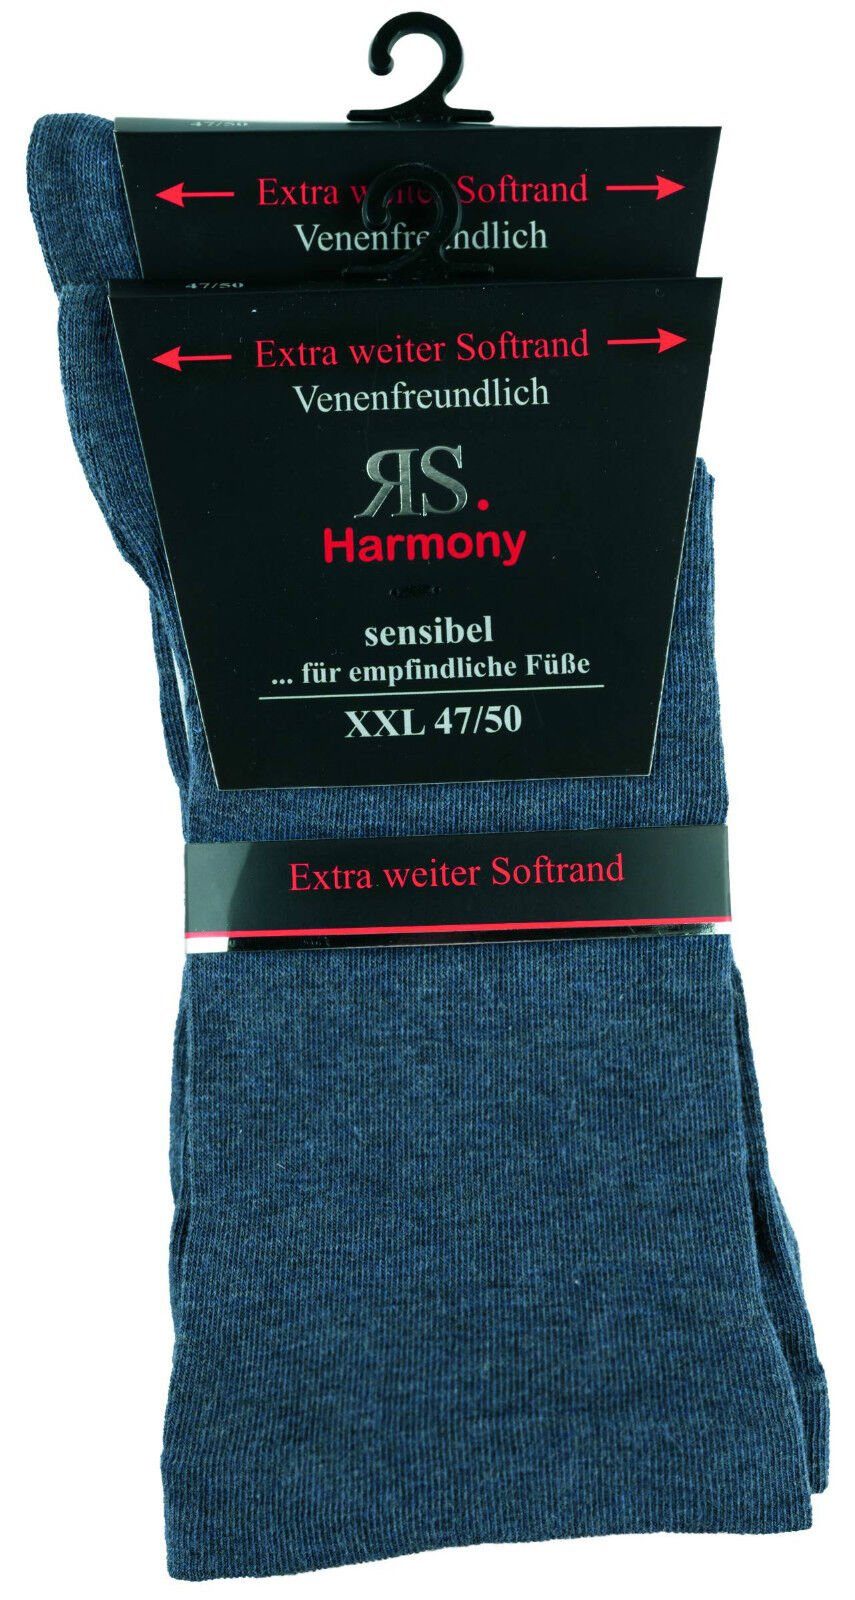 RS Harmony Socken Diabetikersocken extra weit breit Übergröße ohne Gummi für Problemfüße (2 Paar) Spitze und Ferse verstärkt jeans